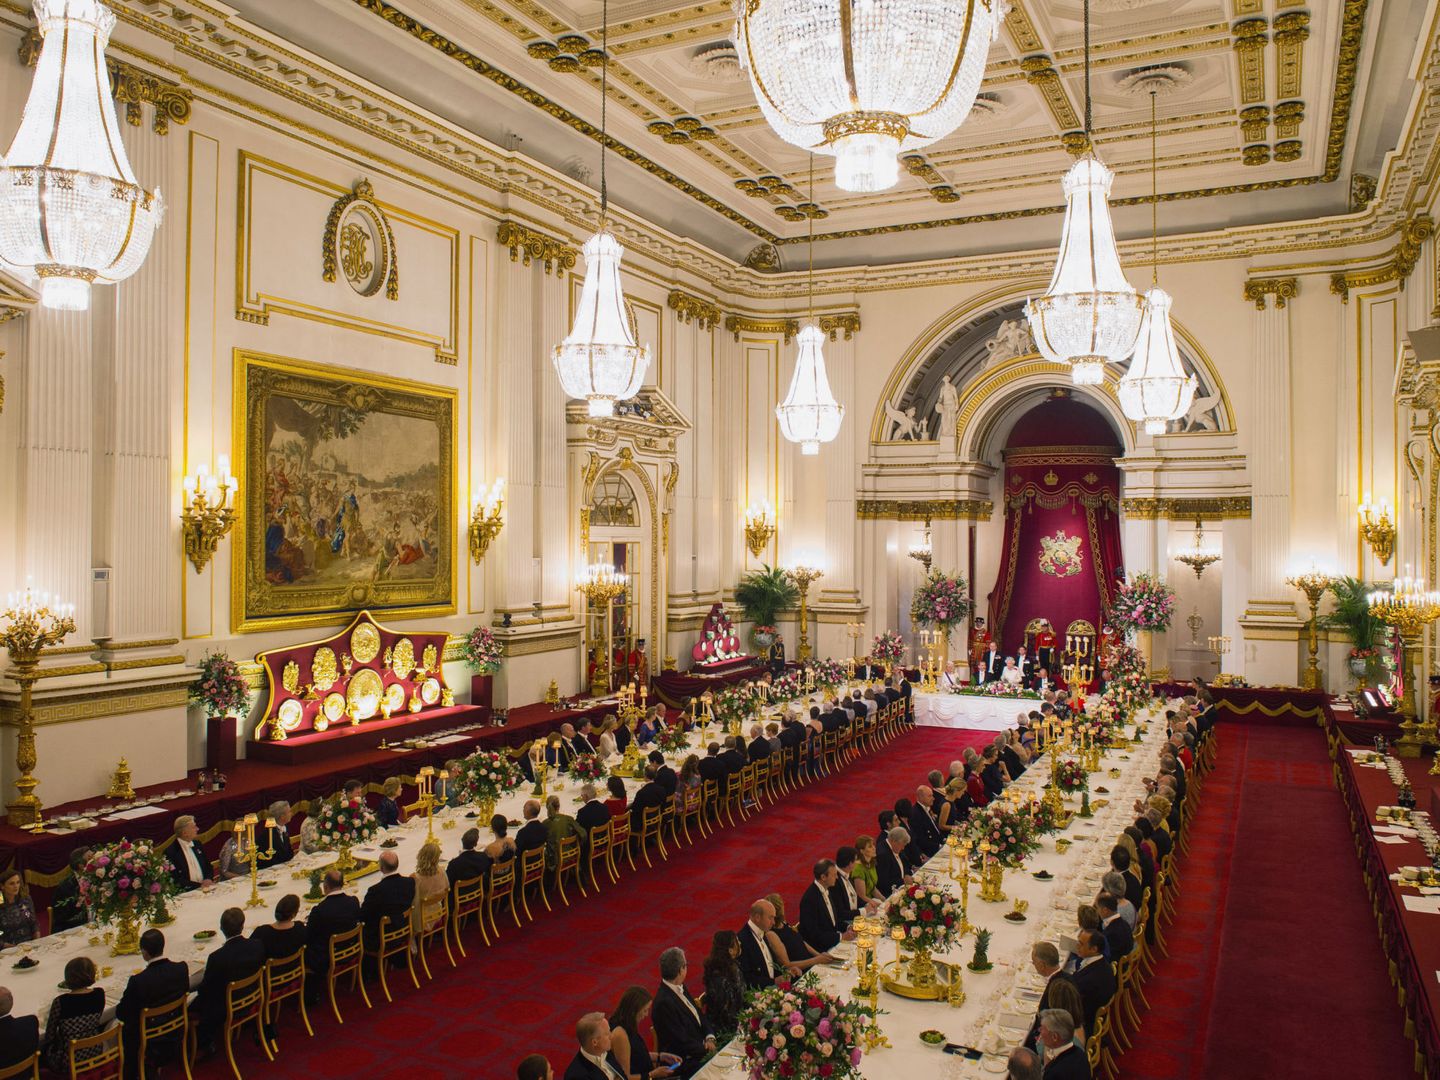 Cena de gala en Buckingham en honor a los Reyes de España, Felipe y Letizia. (Reuters/Dominic Lipinski)